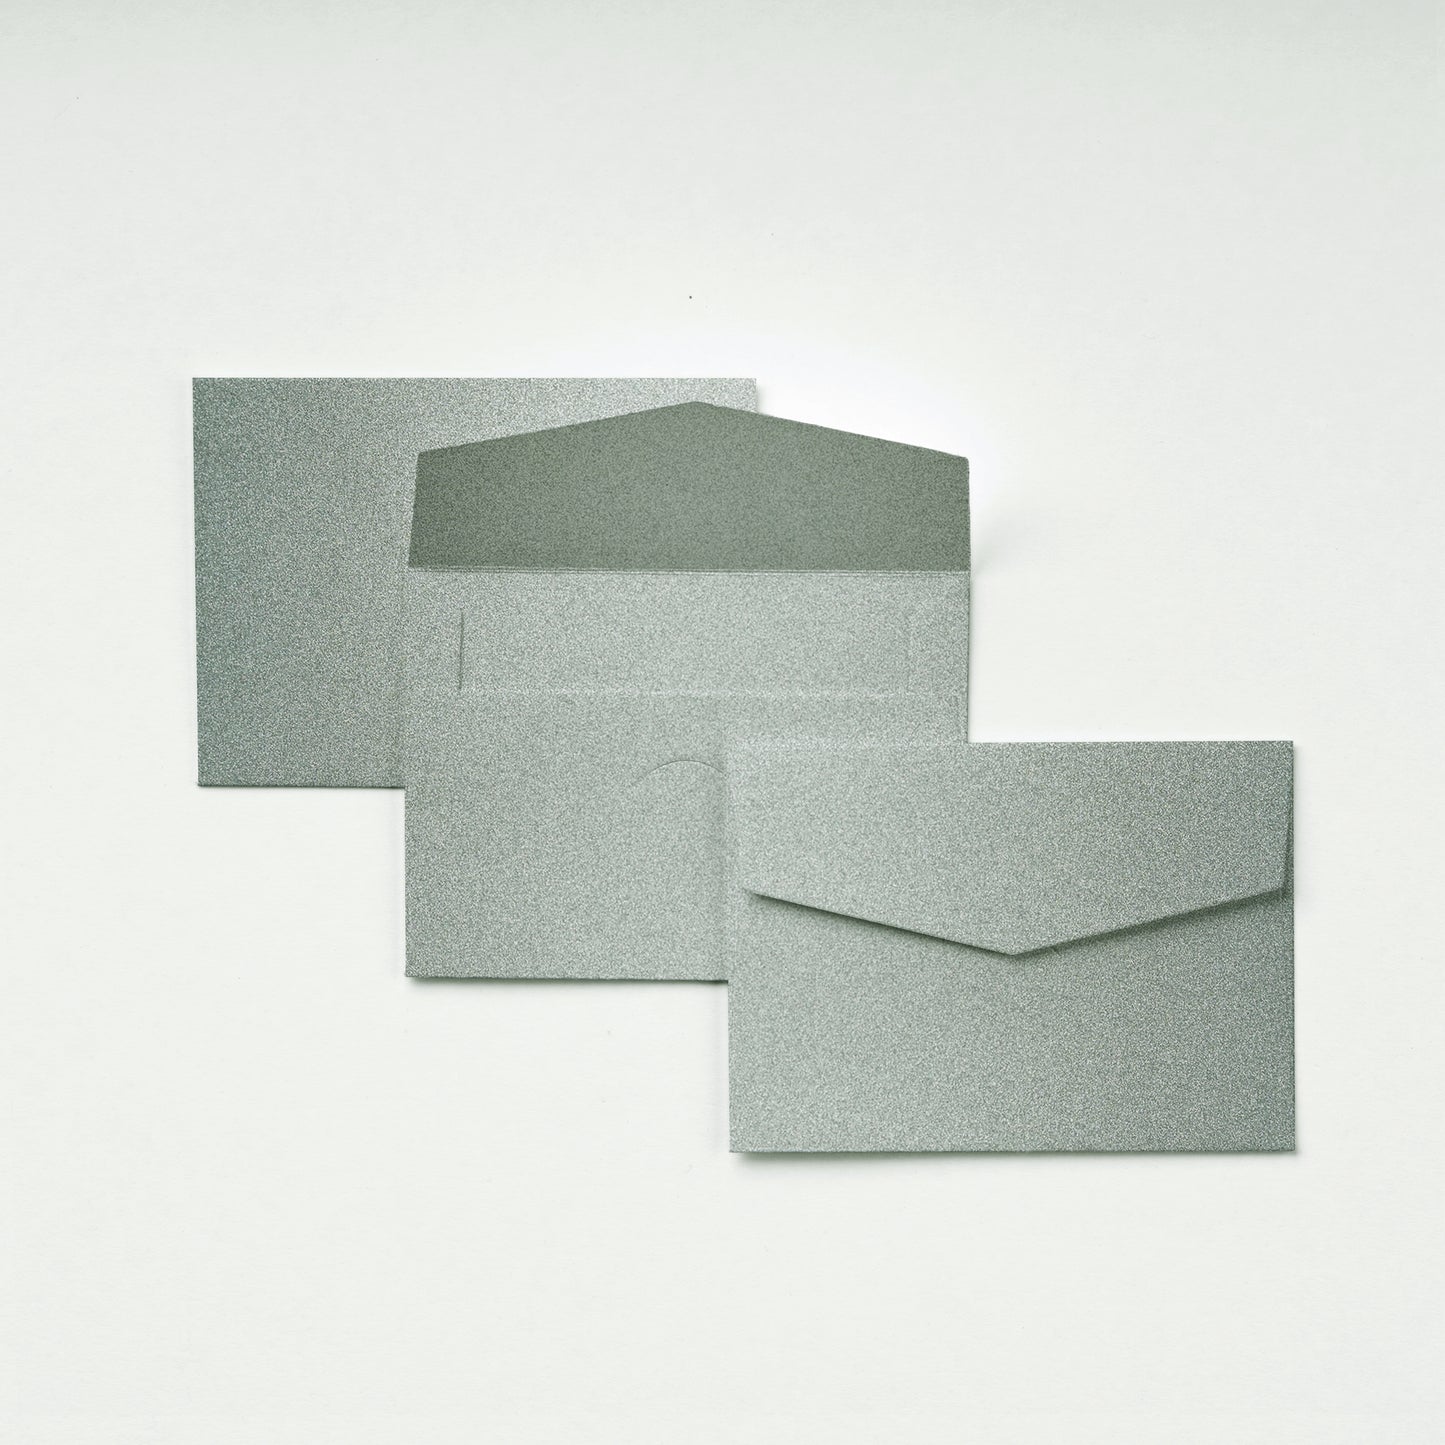 Pocket Envelope - Silver